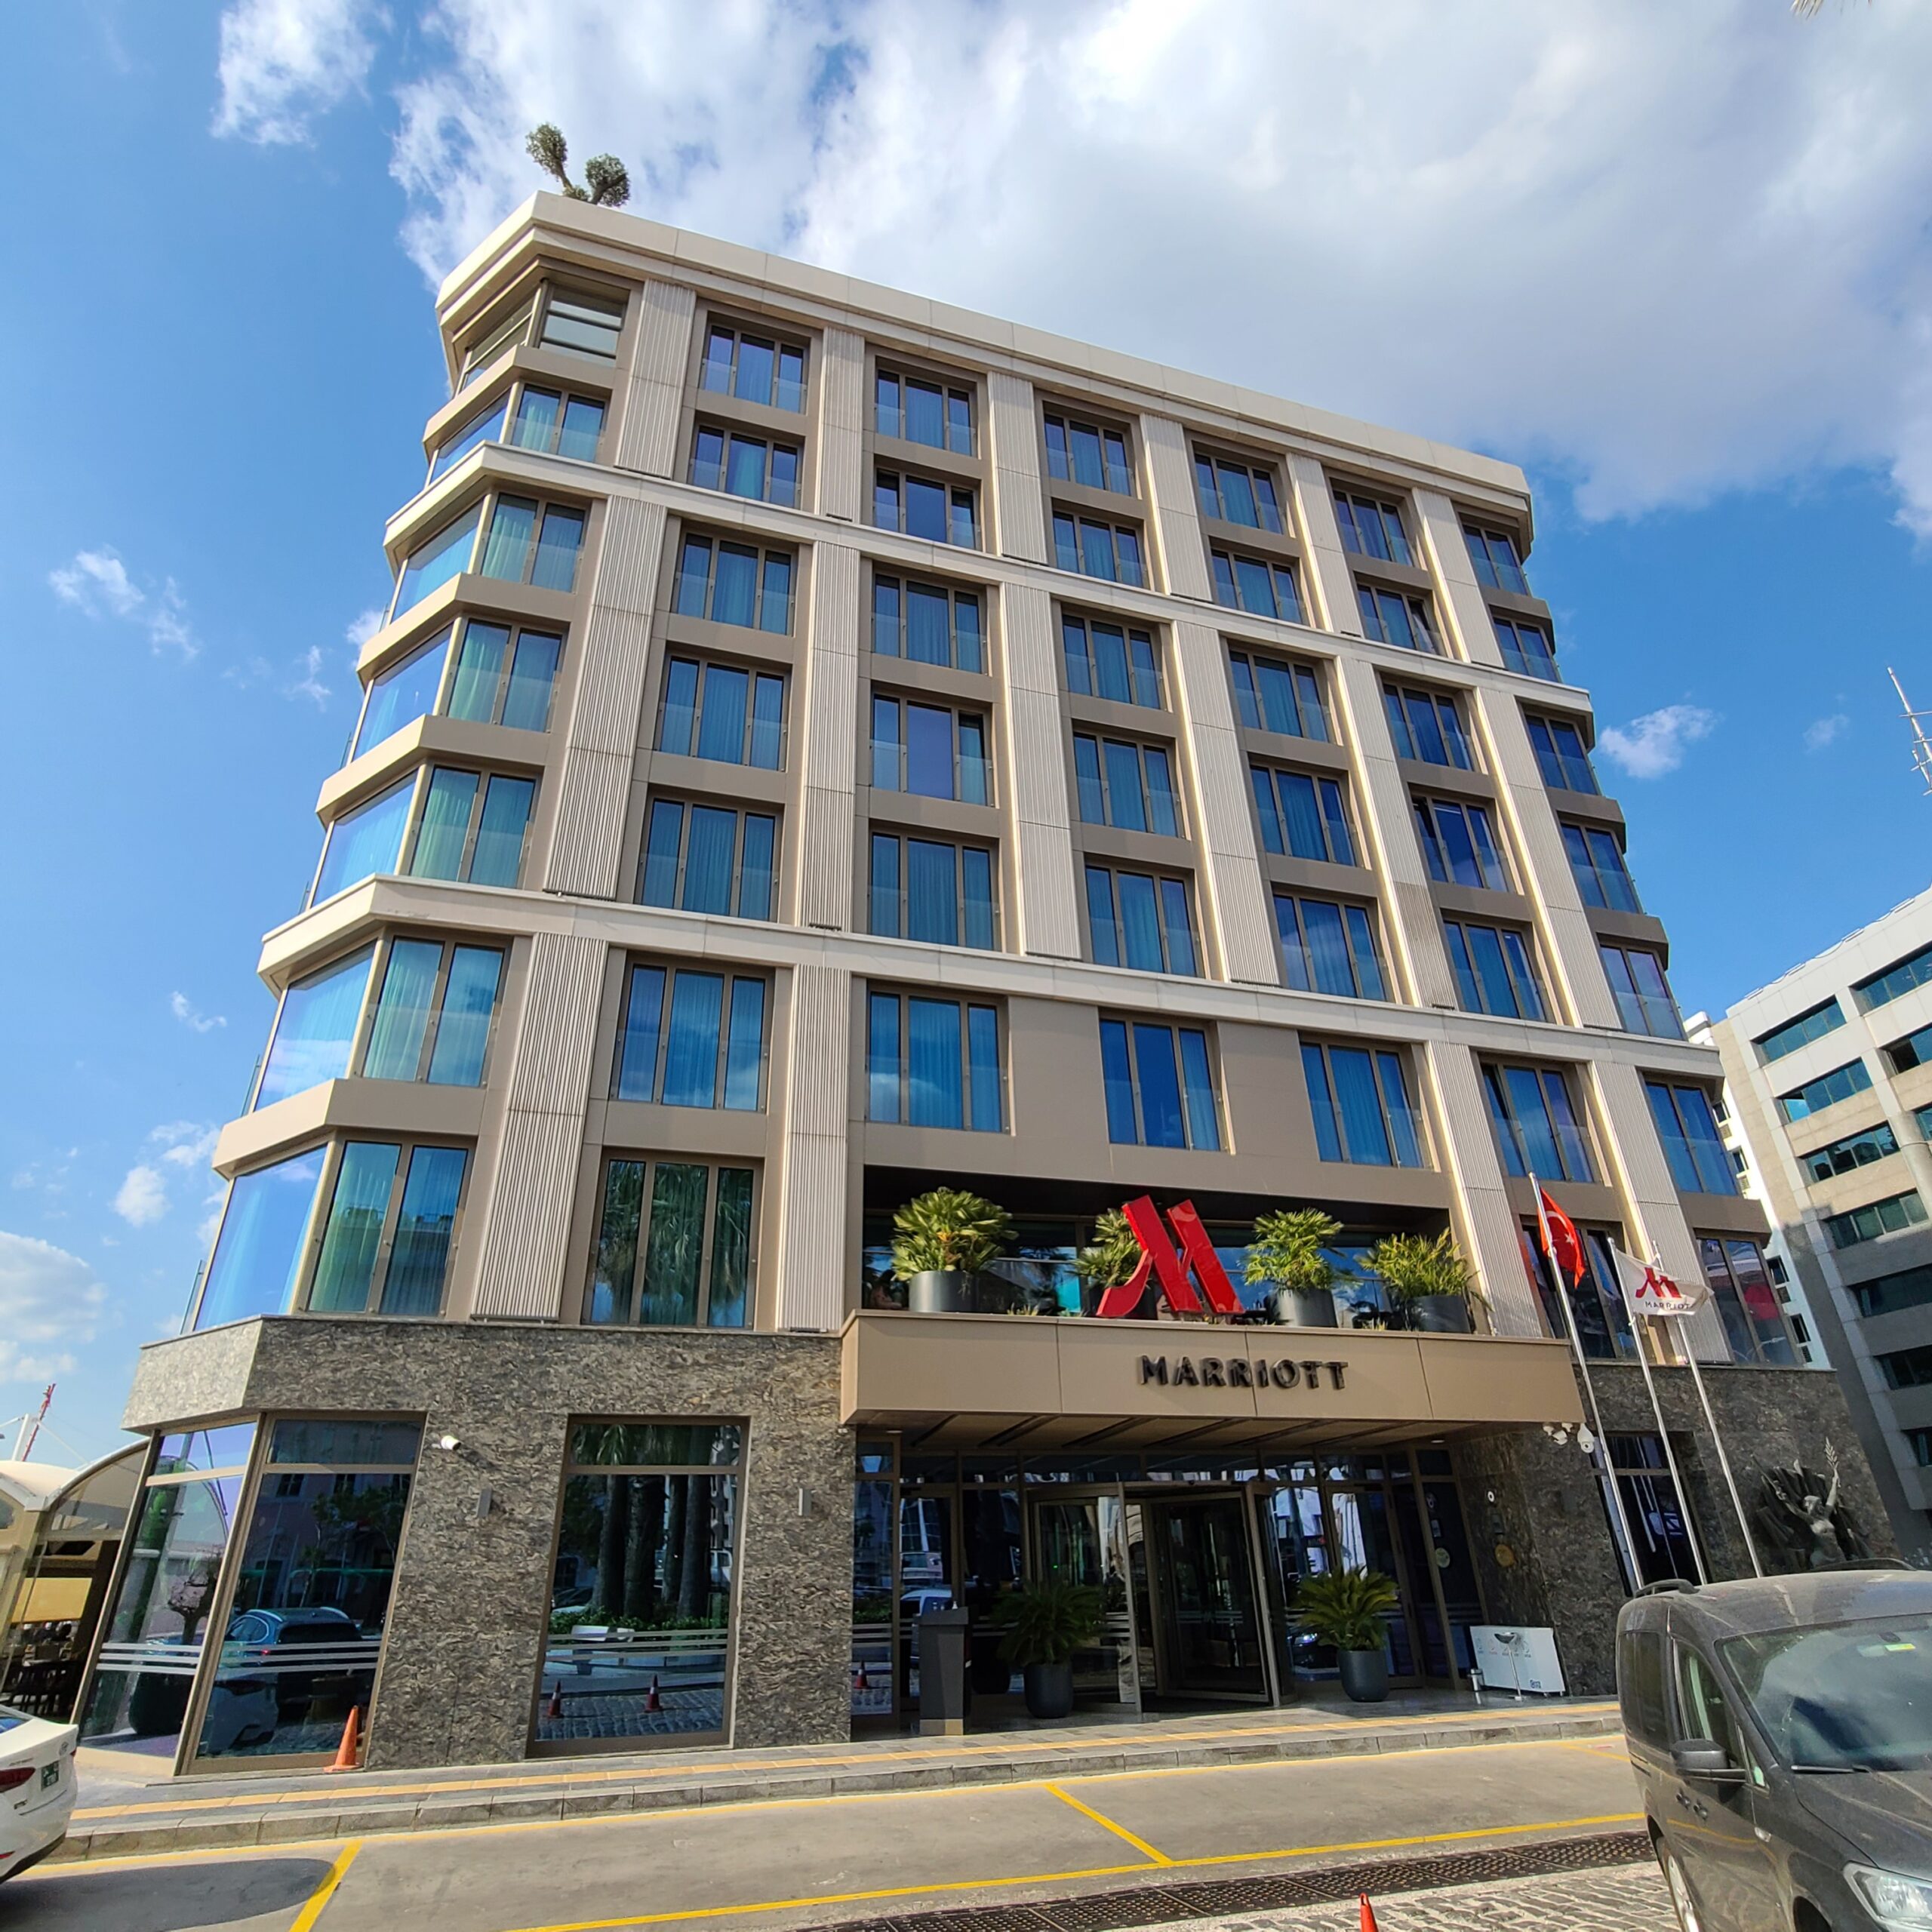 Izmir Marriott Hotel Building